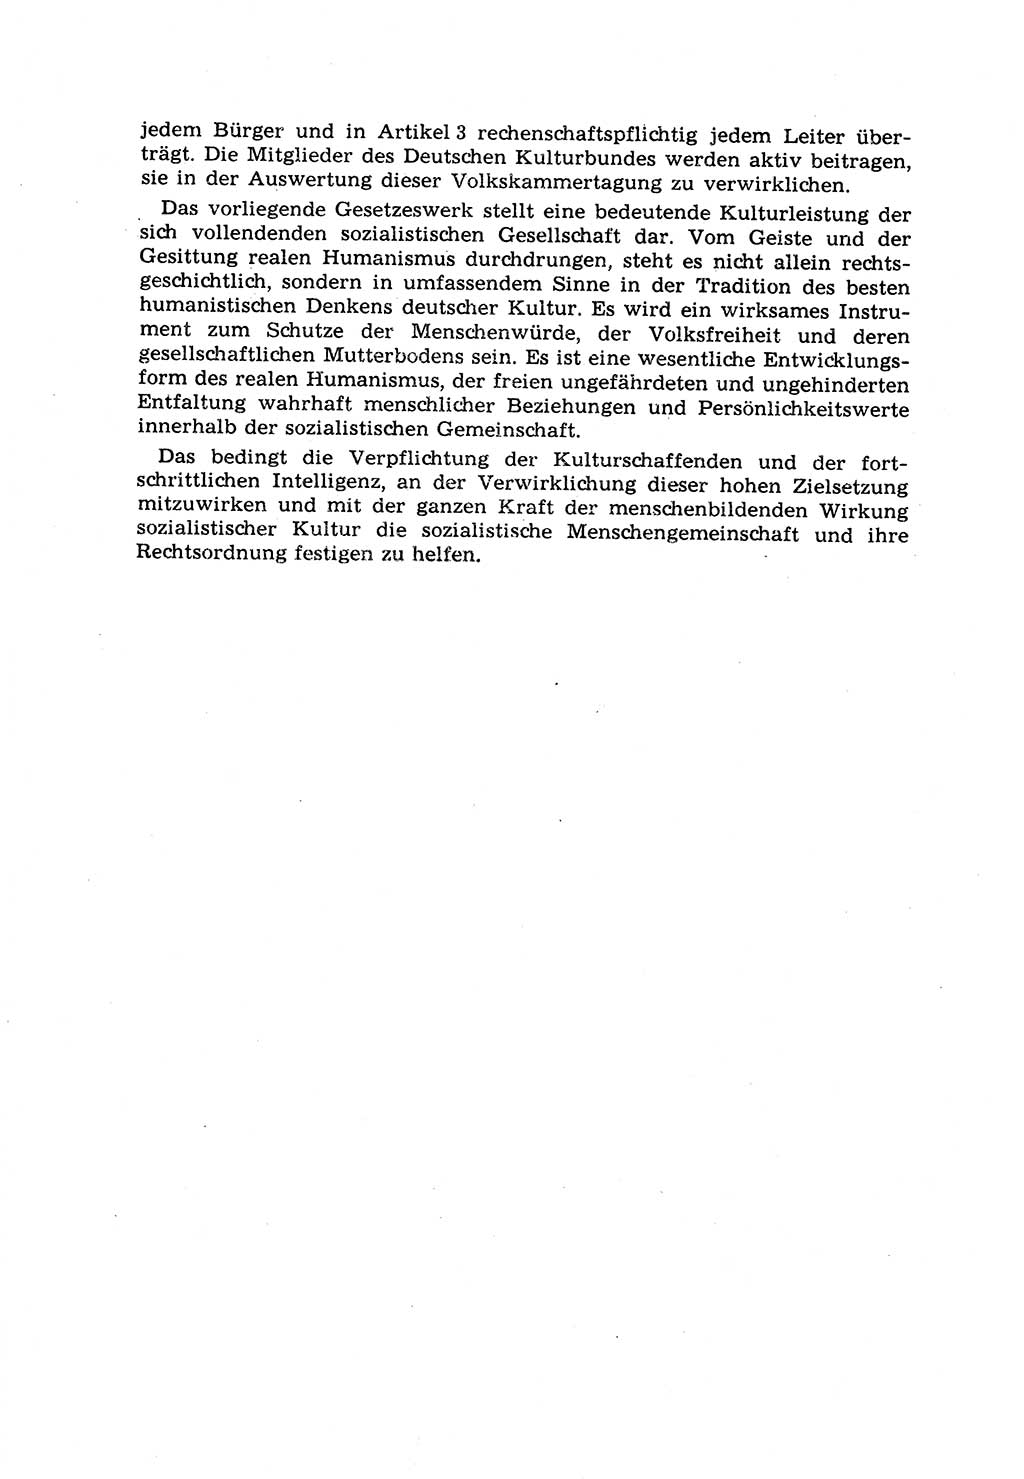 Strafrecht [Deutsche Demokratische Republik (DDR)] 1968, Seite 90 (Strafr. DDR 1968, S. 90)